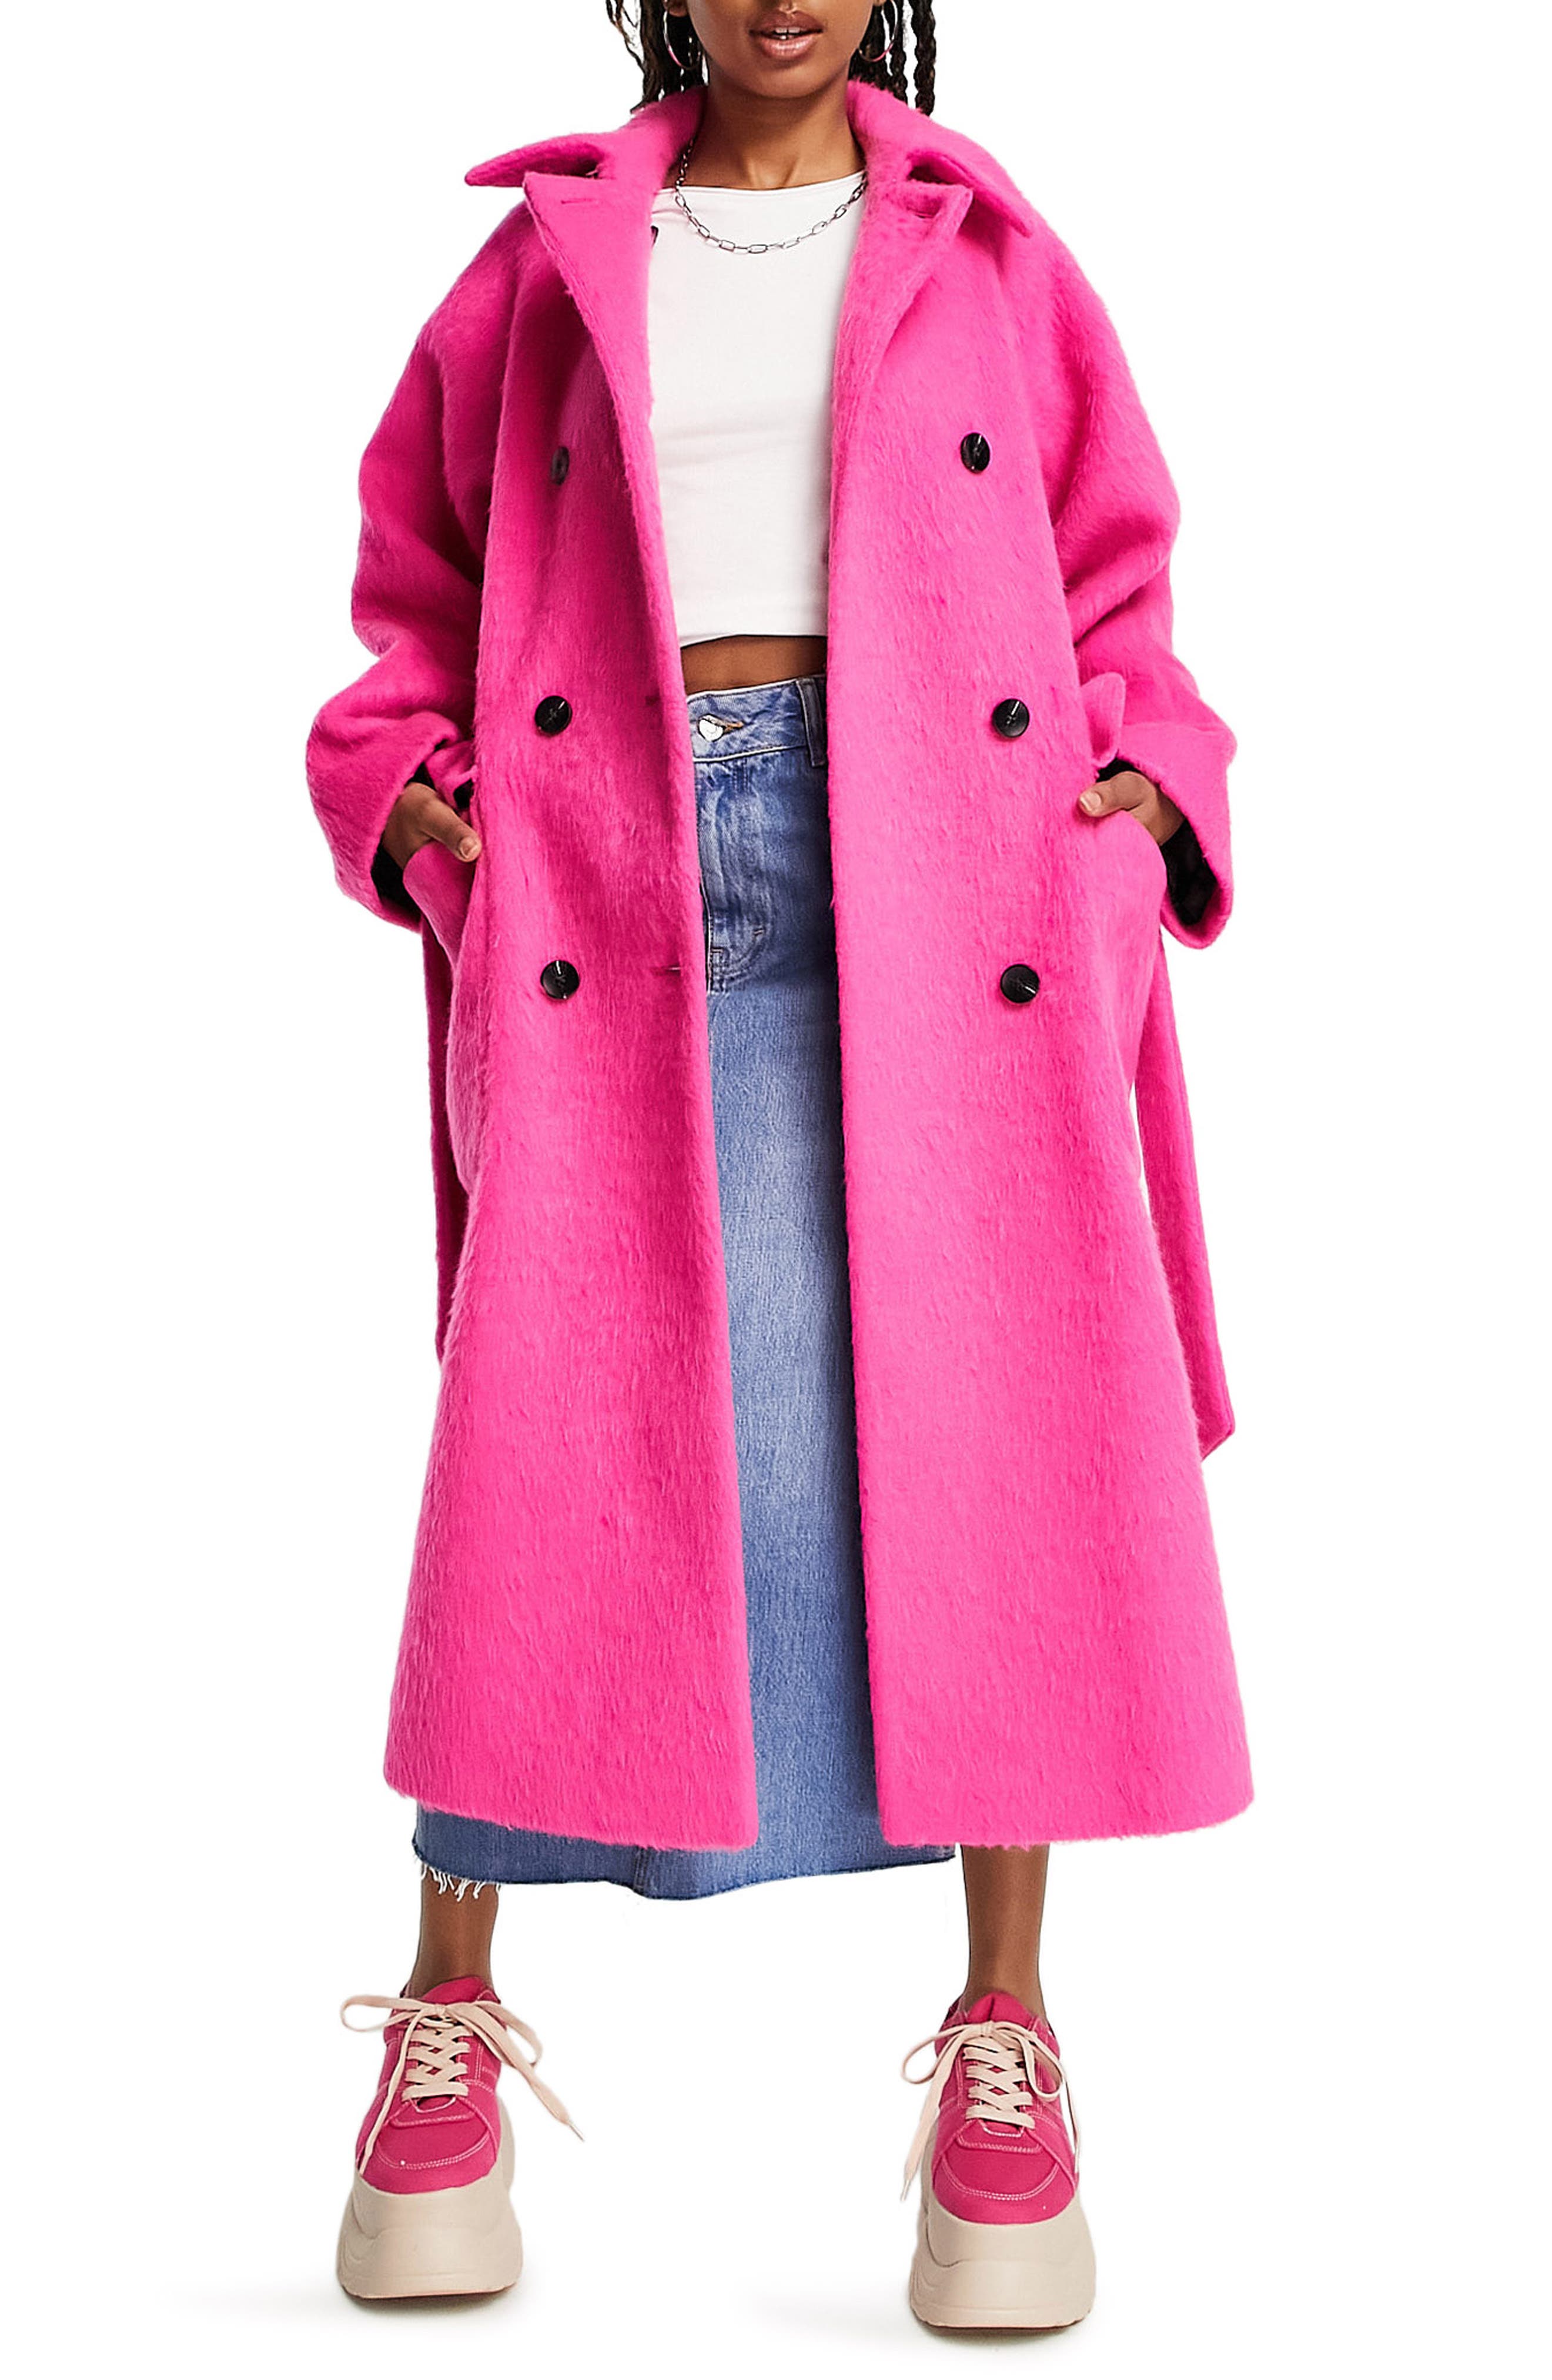 Zeza fashion Fur Jacket pink abstract pattern elegant Fashion Jackets Fur Jackets 